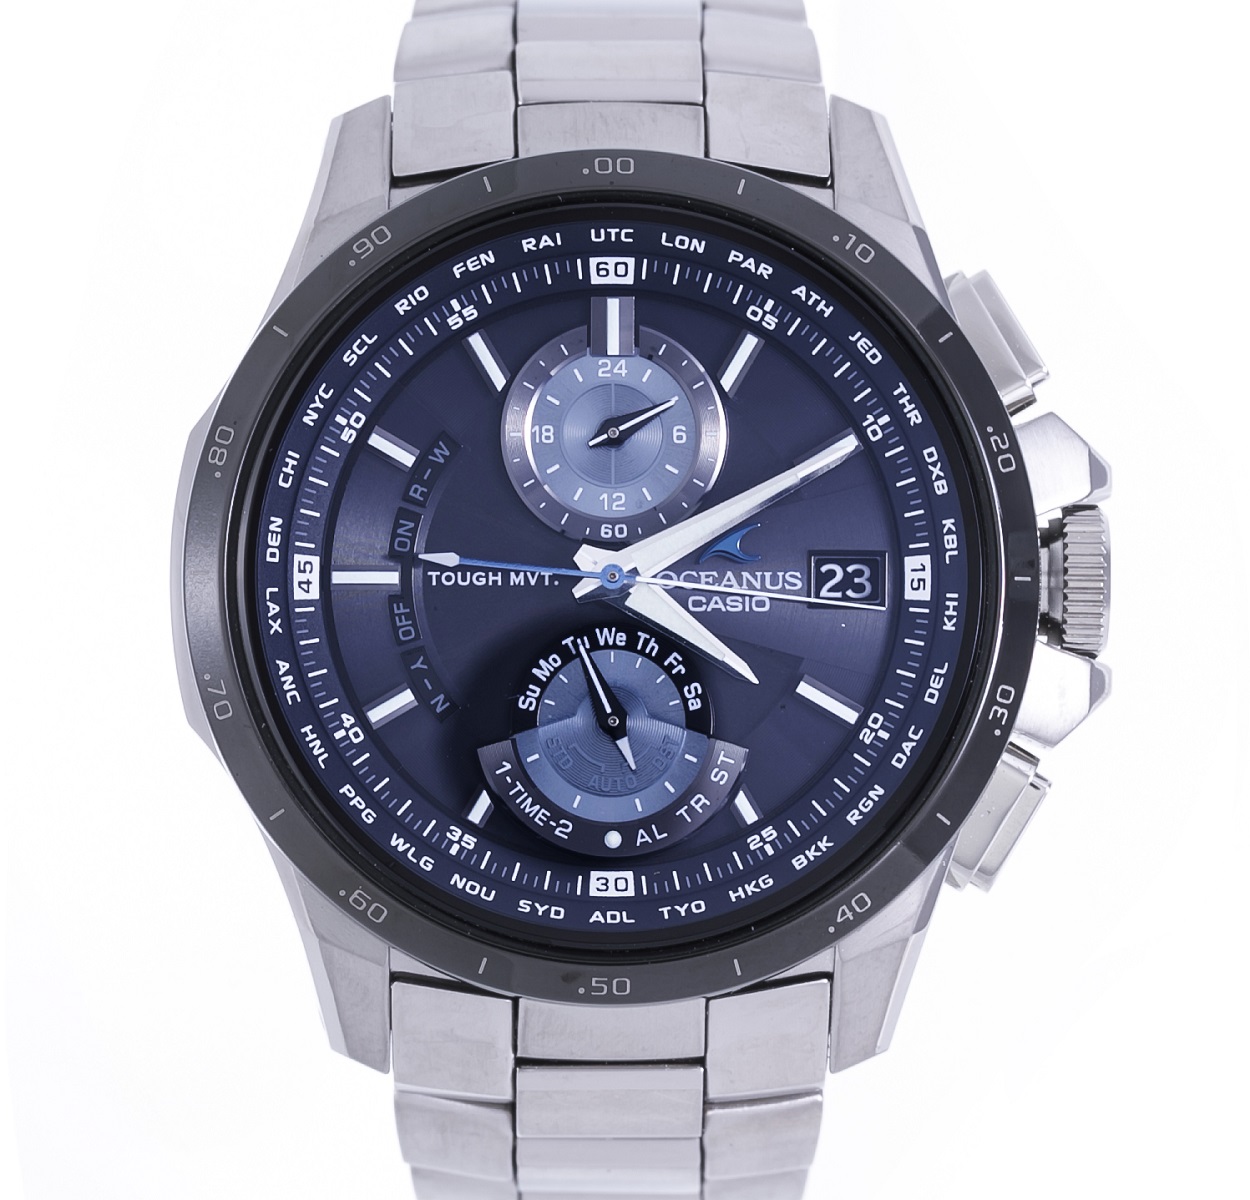 CASIOのオシアナスOCW-T1010-1AJF タフソーラー マルチバンド6 腕時計